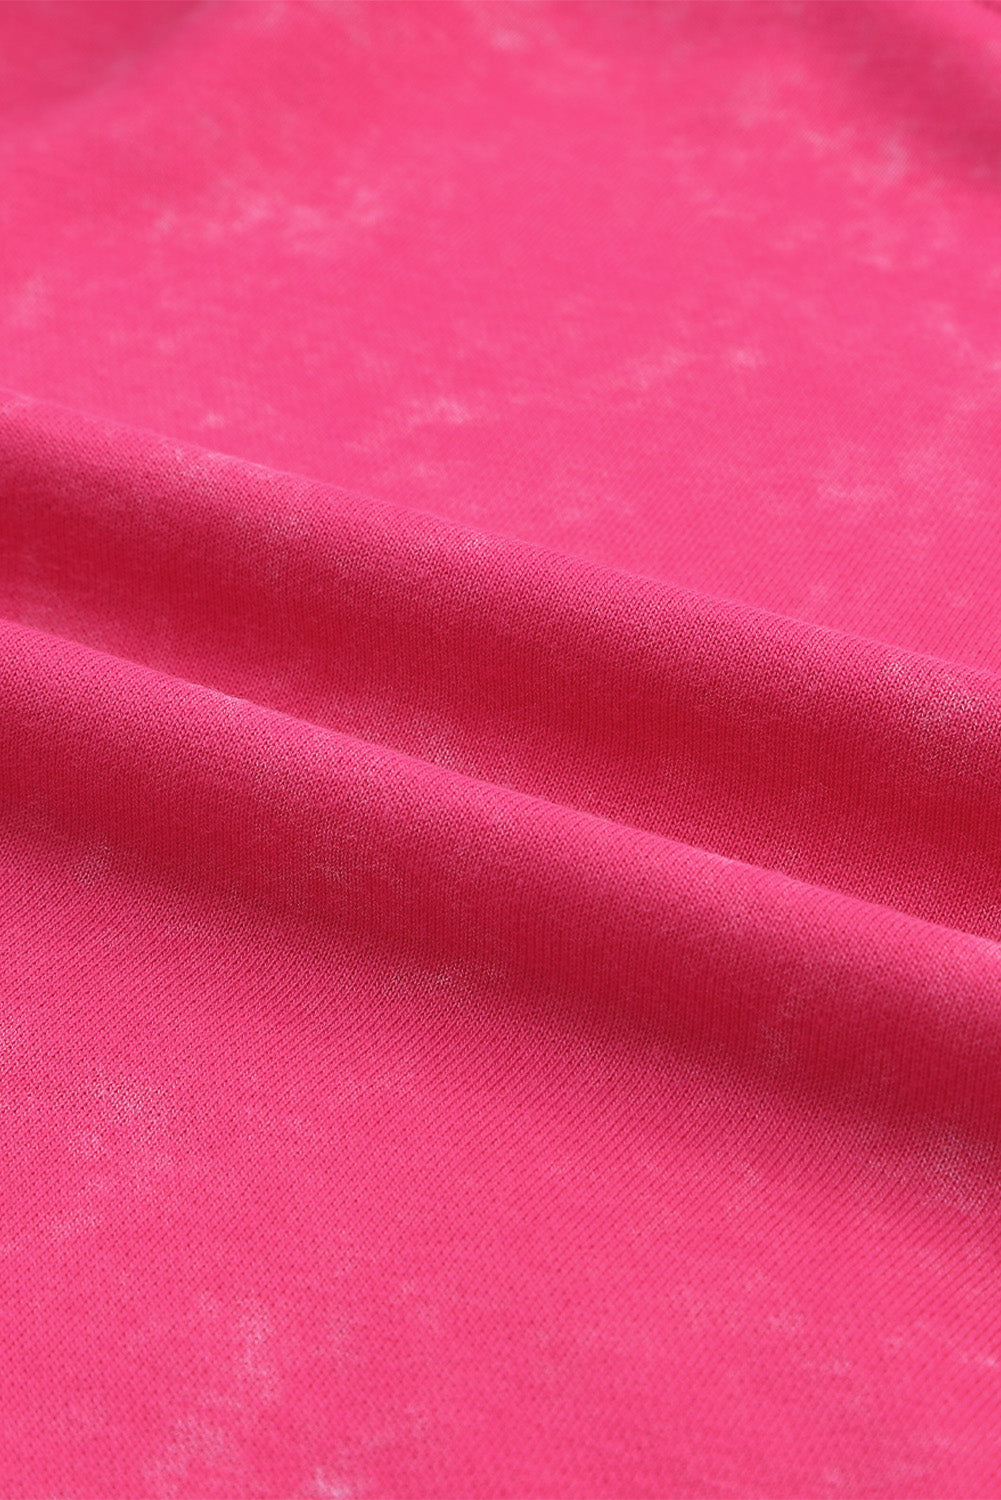 Rose Acid Wash Pulover opuštenog kroja s šavovima i prorezima